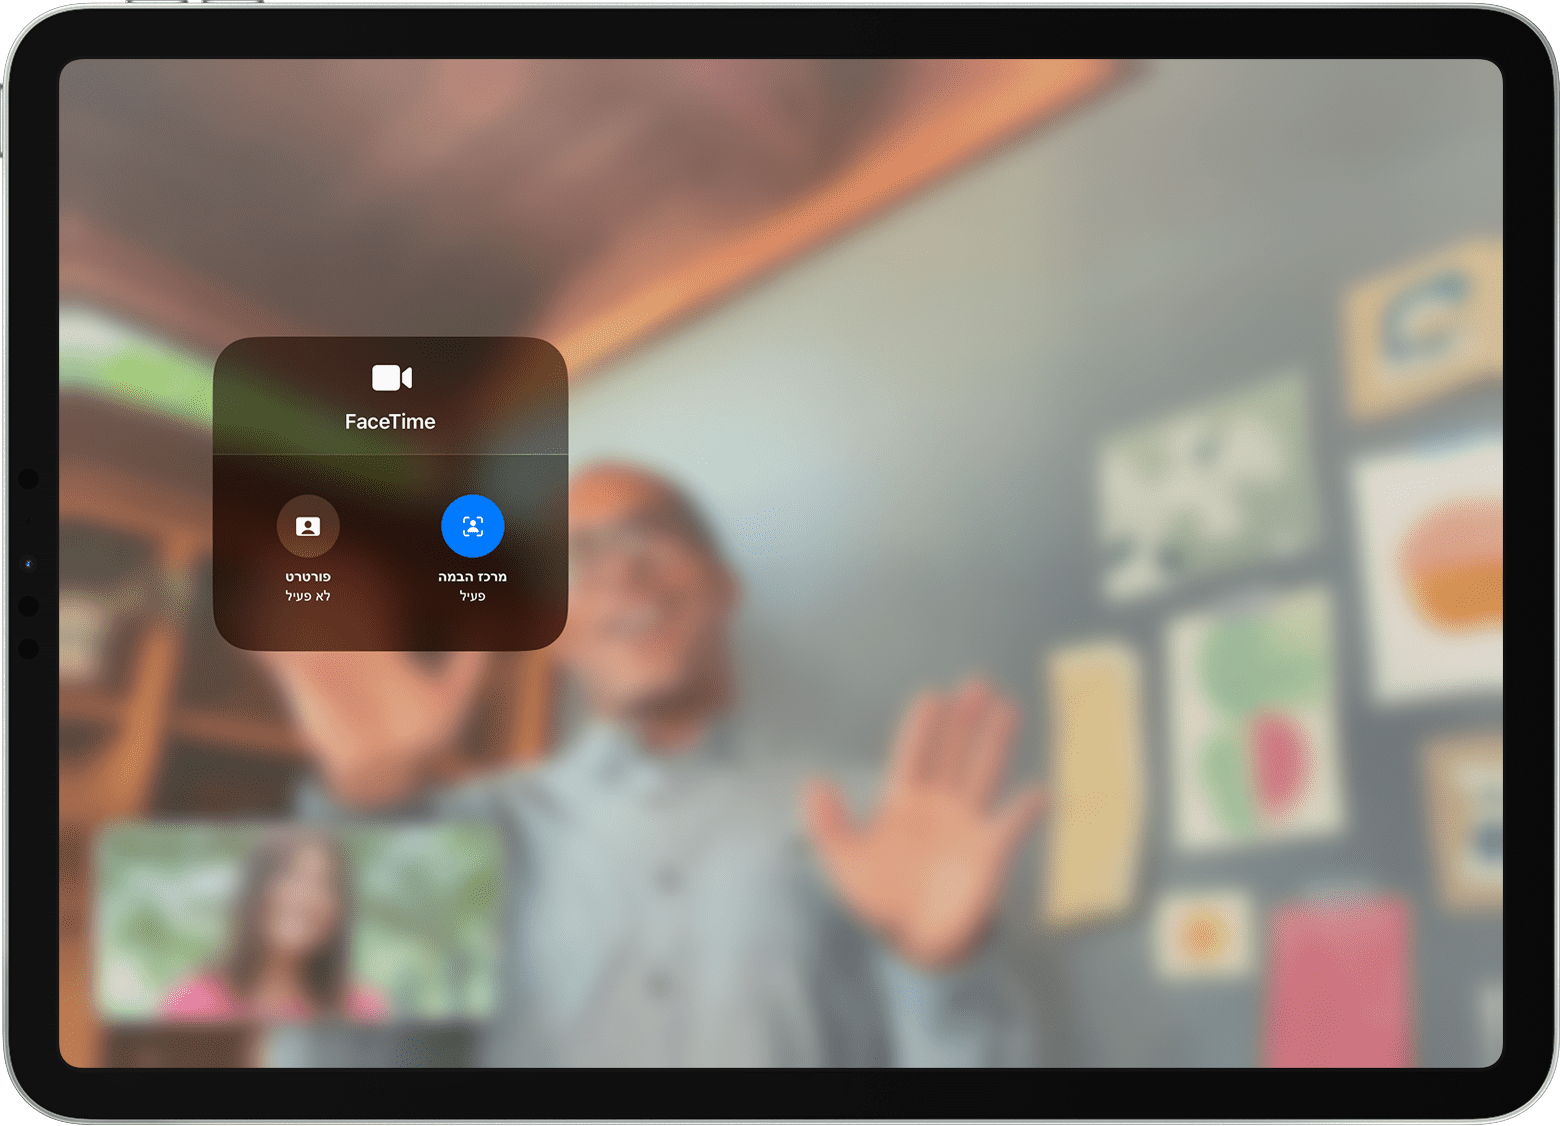 מסך של מכשיר iPad מציג שיחת FaceTime כאשר האפשרויות של "אפקטים בווידאו" נראות לעין